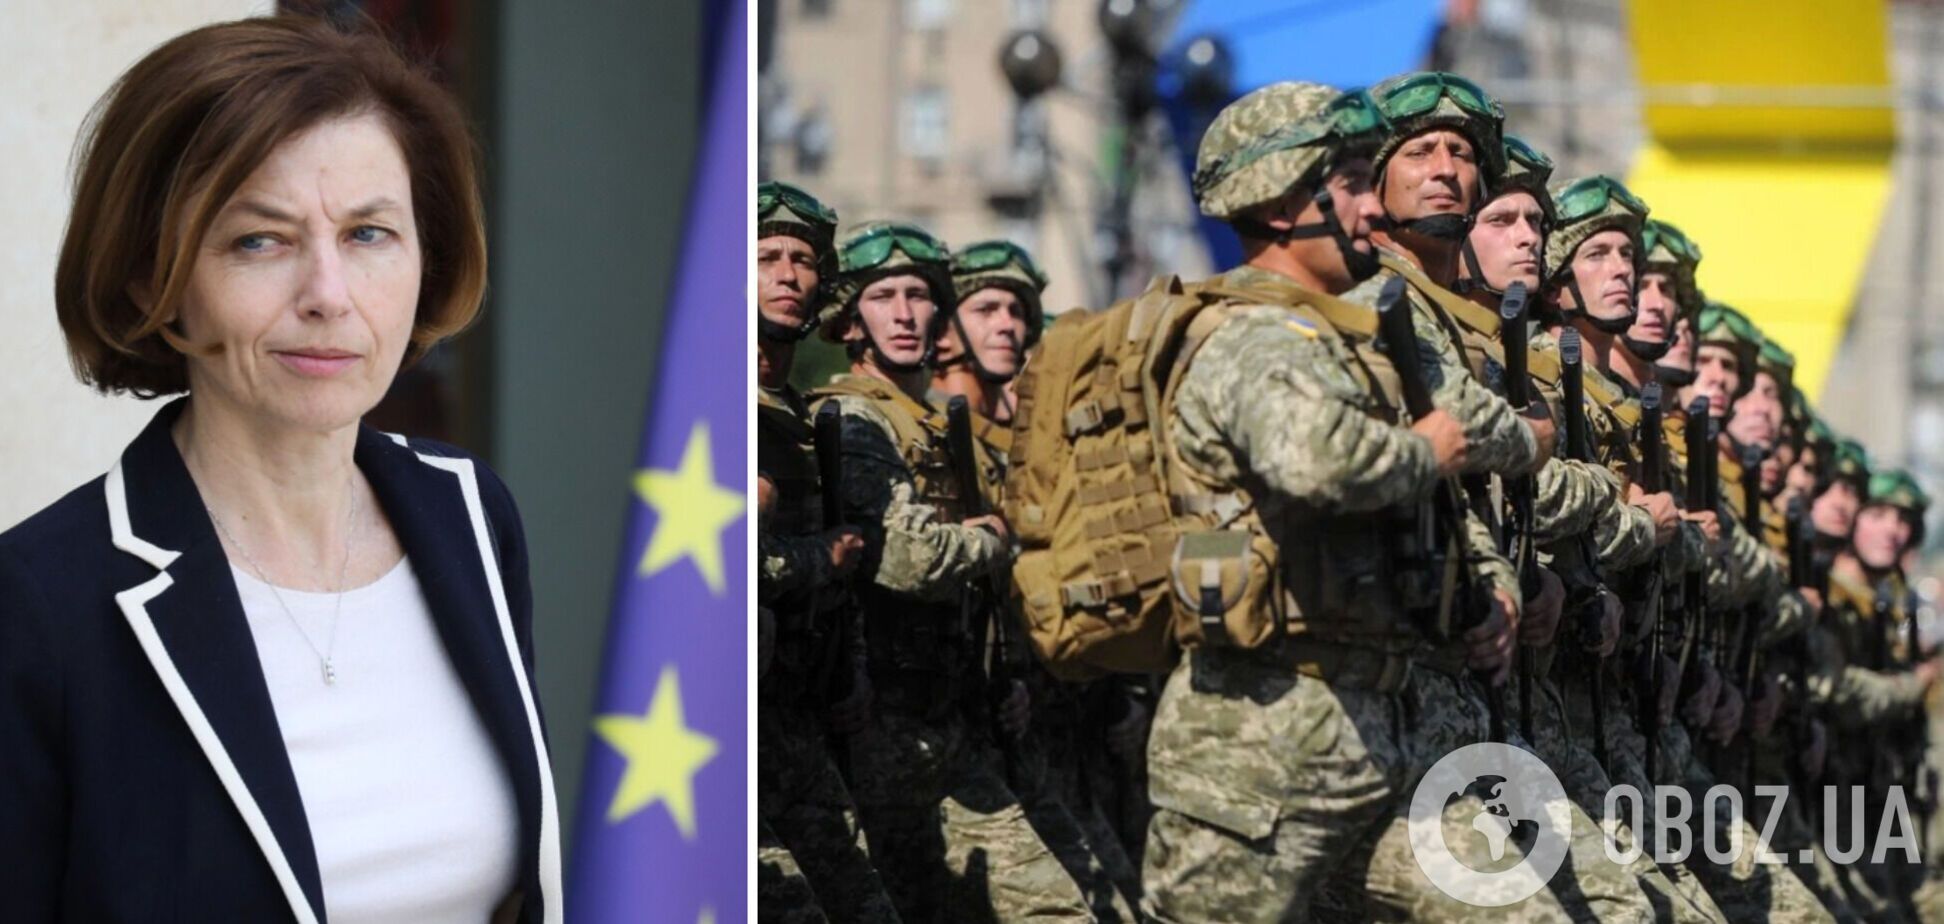 Франция предоставит дополнительную военную помощь Украине